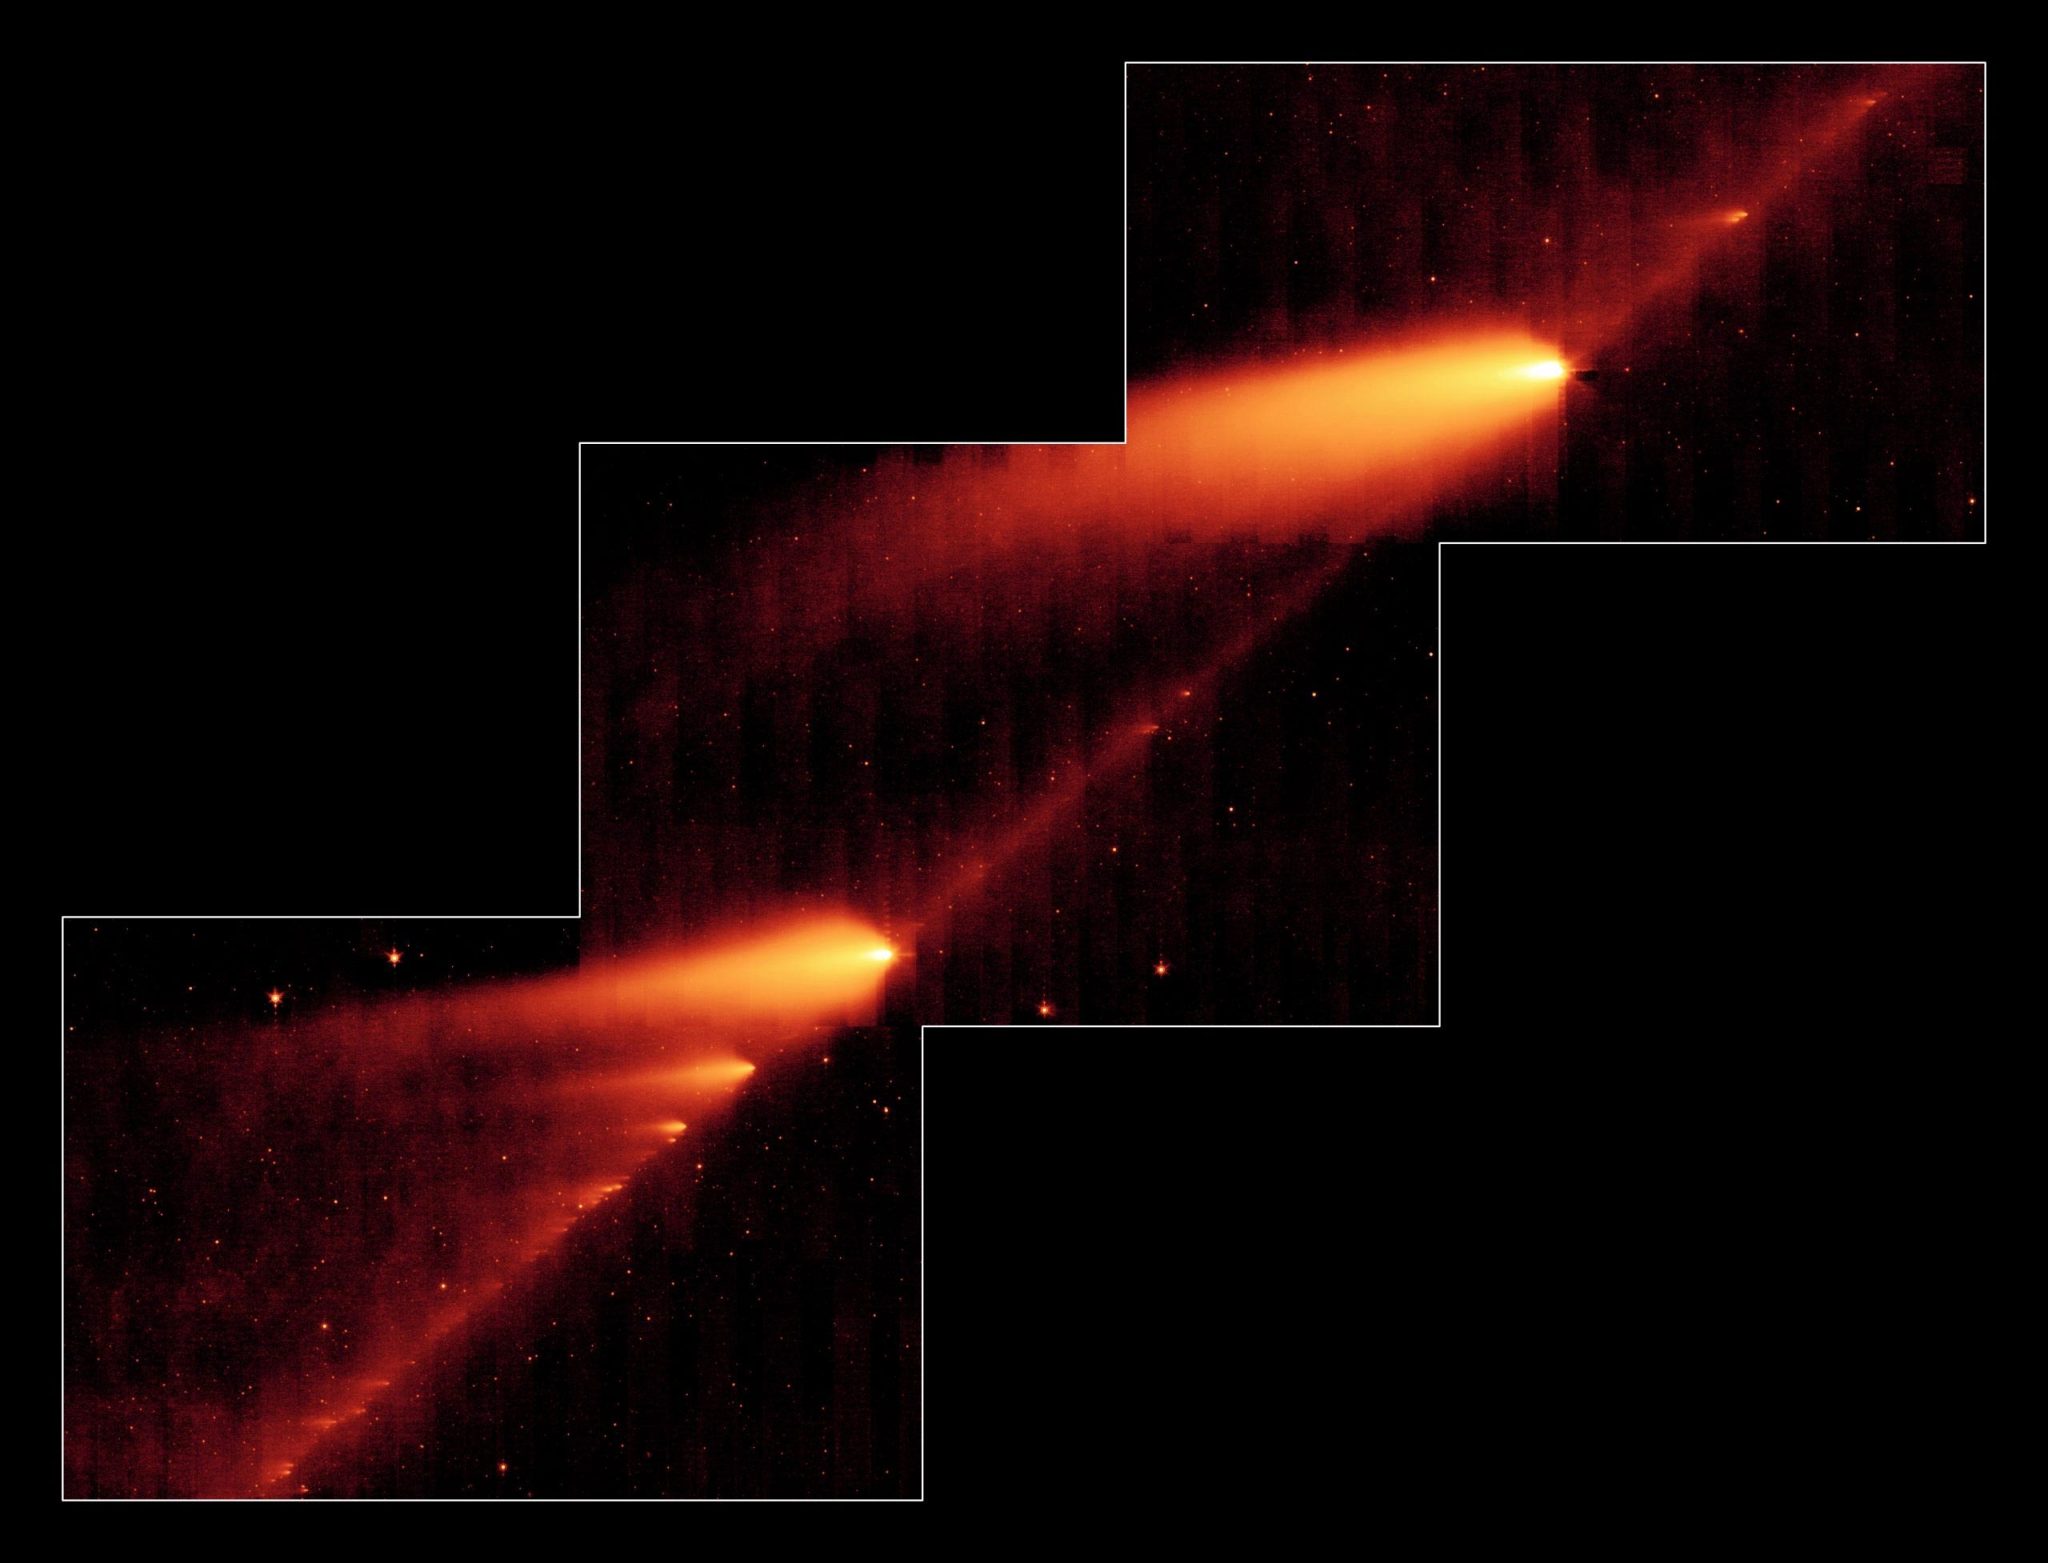 Comet Broken 73P / Schwasmann-Wachmann 3